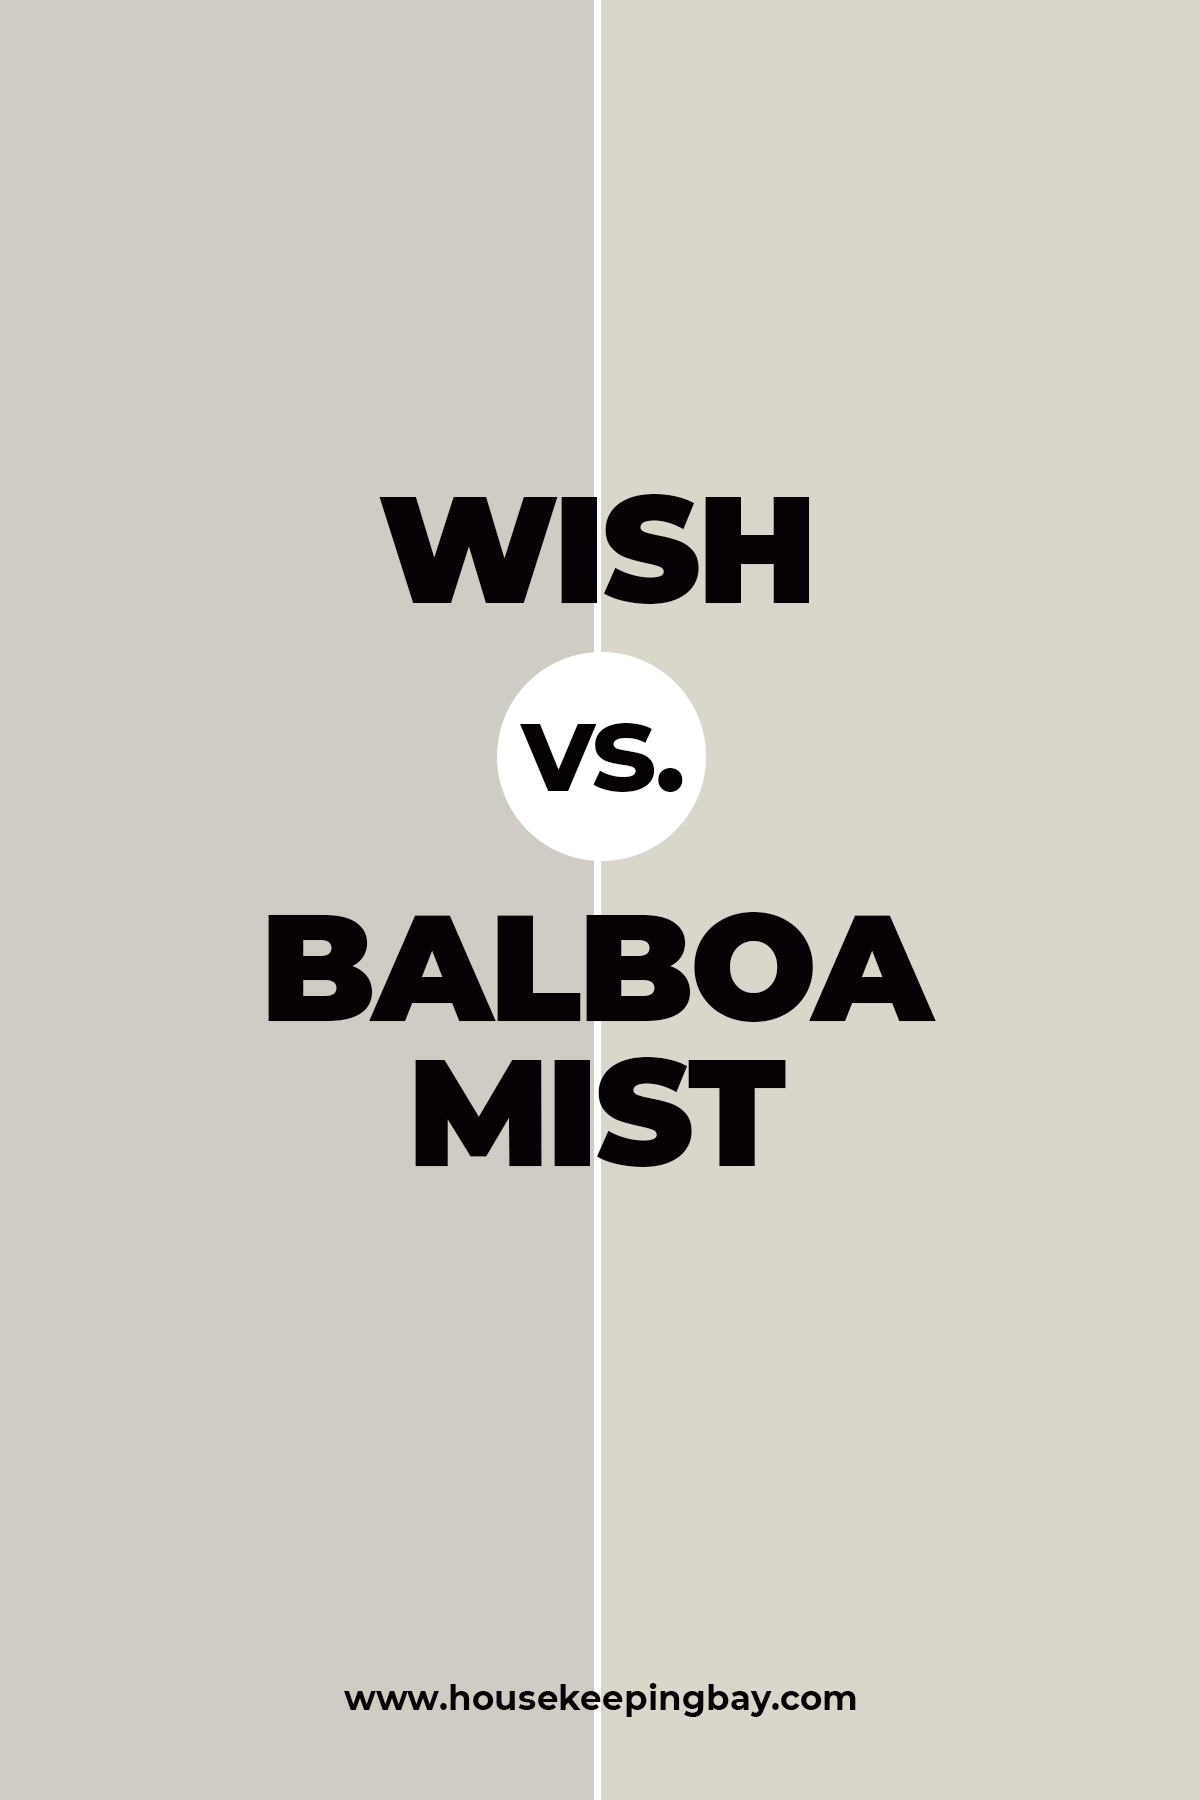 Wish vs. Balboa Mist